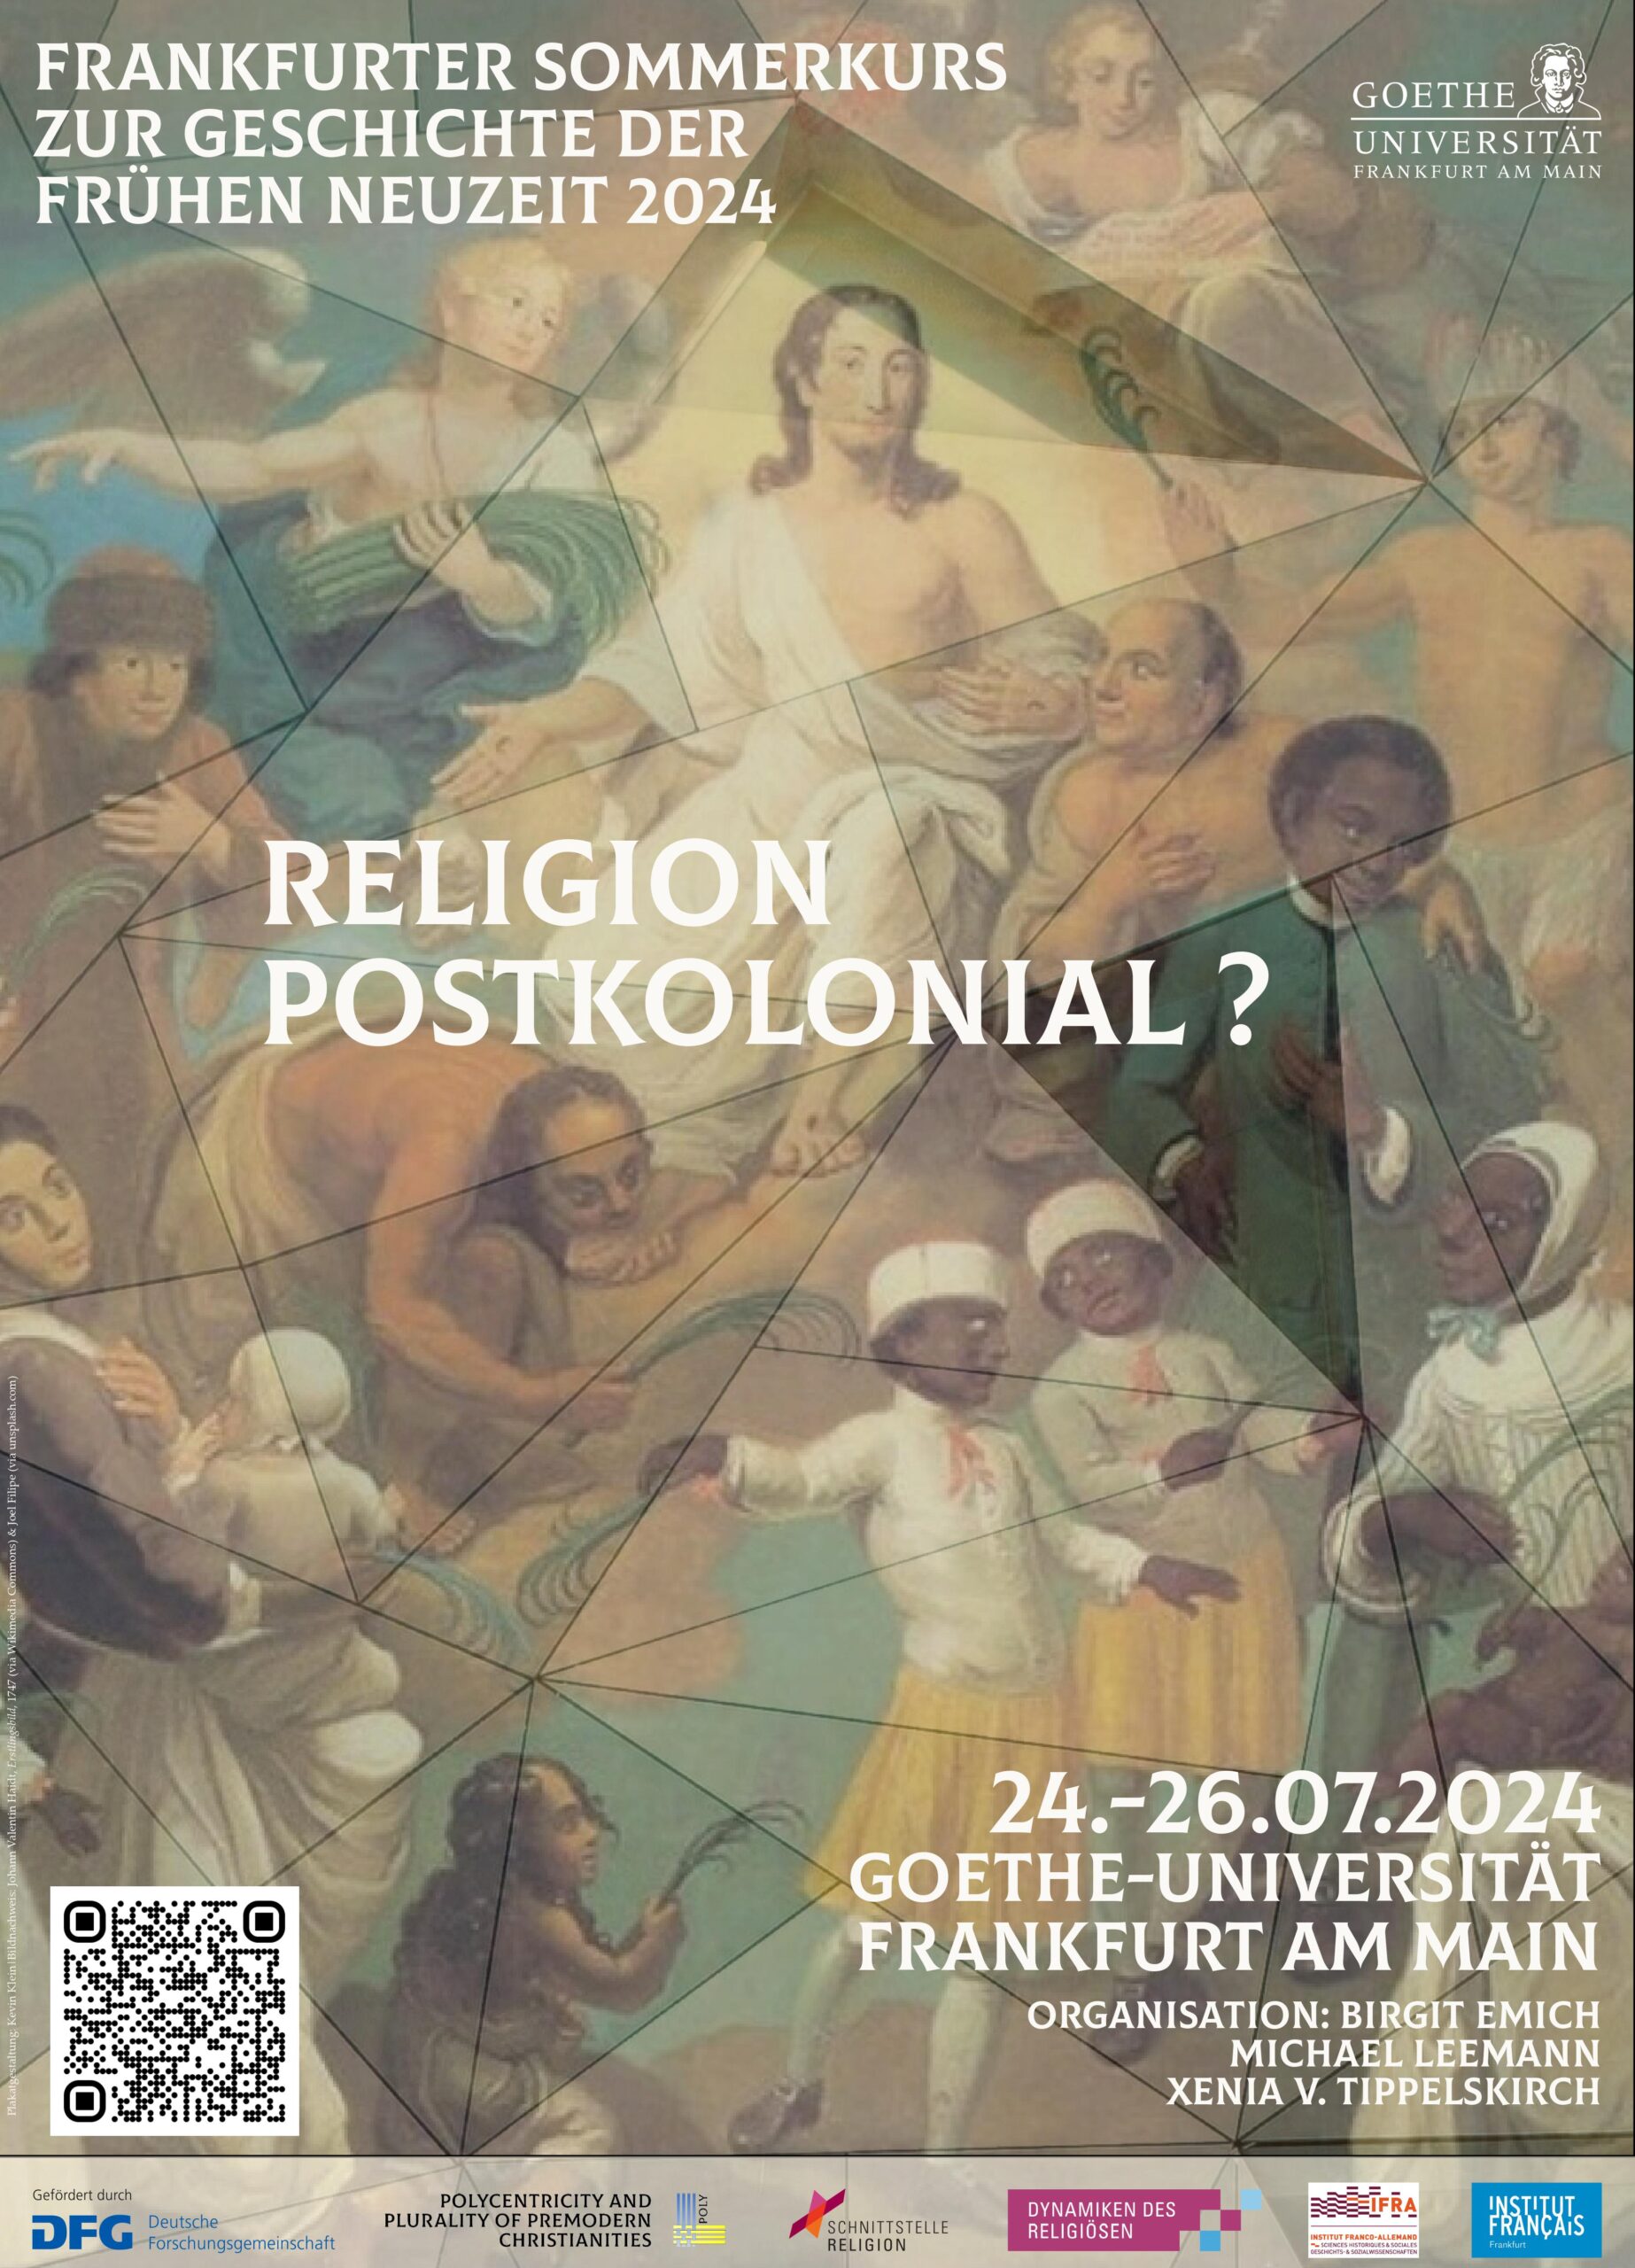 Summer School “Religion postkolonial? Frankfurter Sommerkurs zur Geschichte der Frühen Neuzeit” 